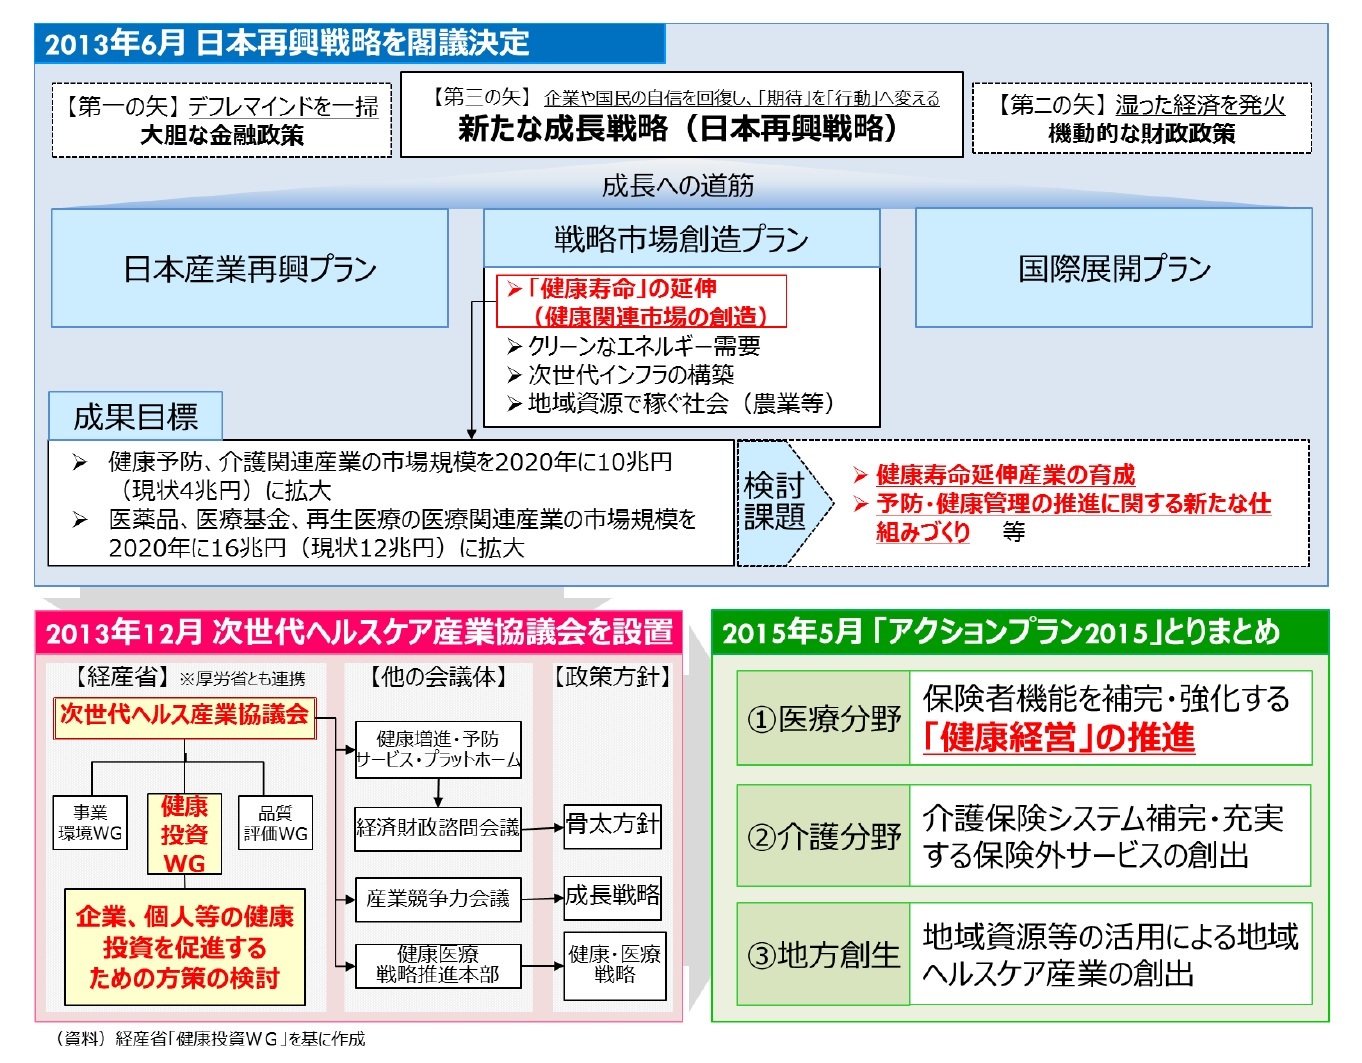 2013年6月 日本再興戦略を閣議決定